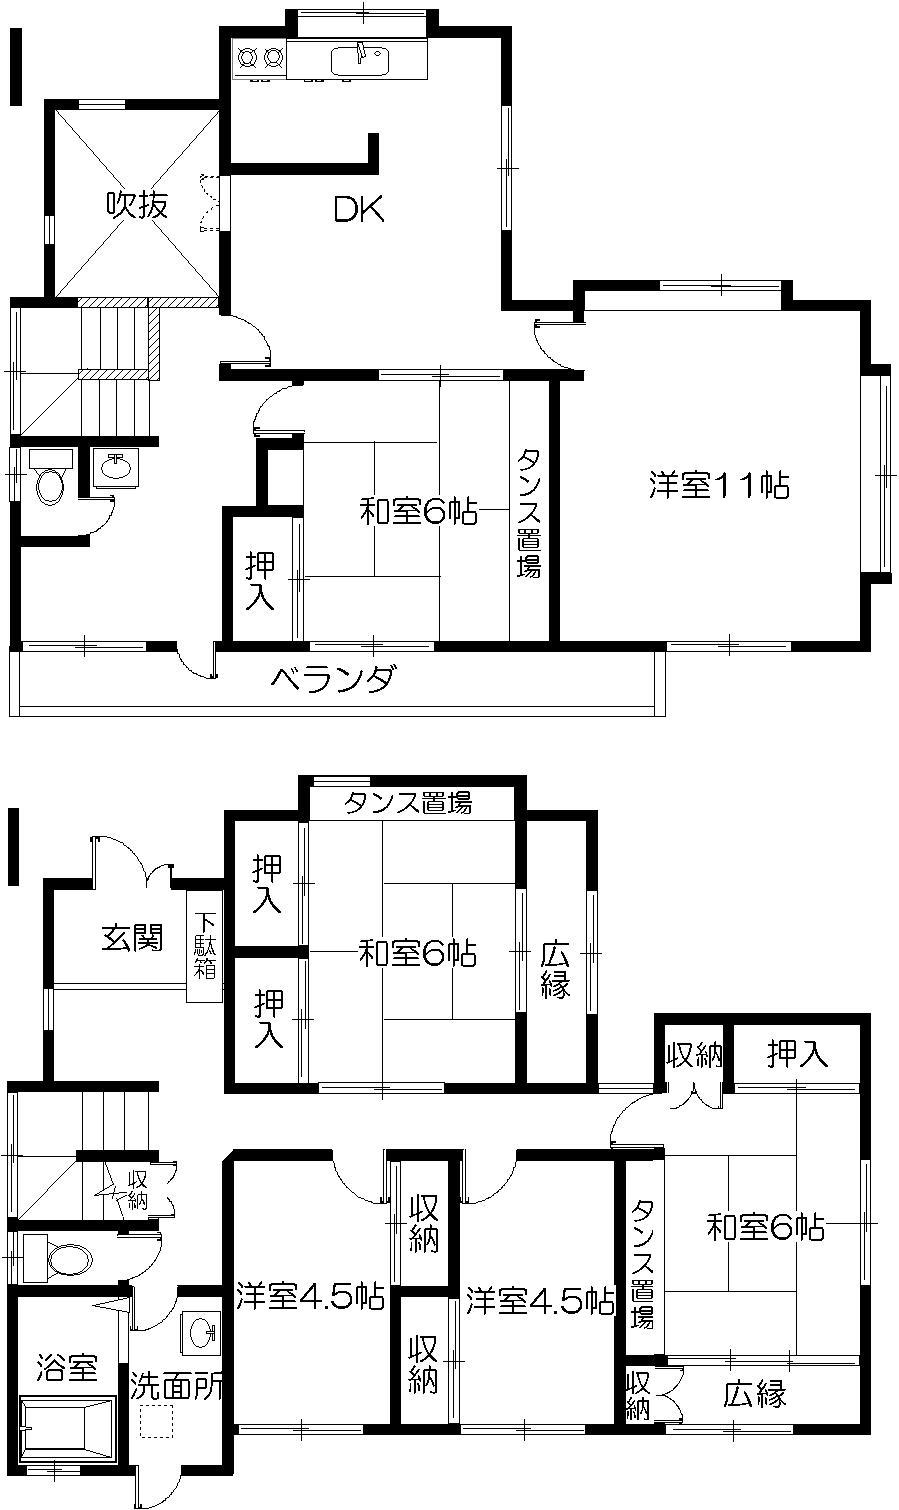 Floor plan. 13.8 million yen, 6DK, Land area 178.98 sq m , Building area 144.4 sq m